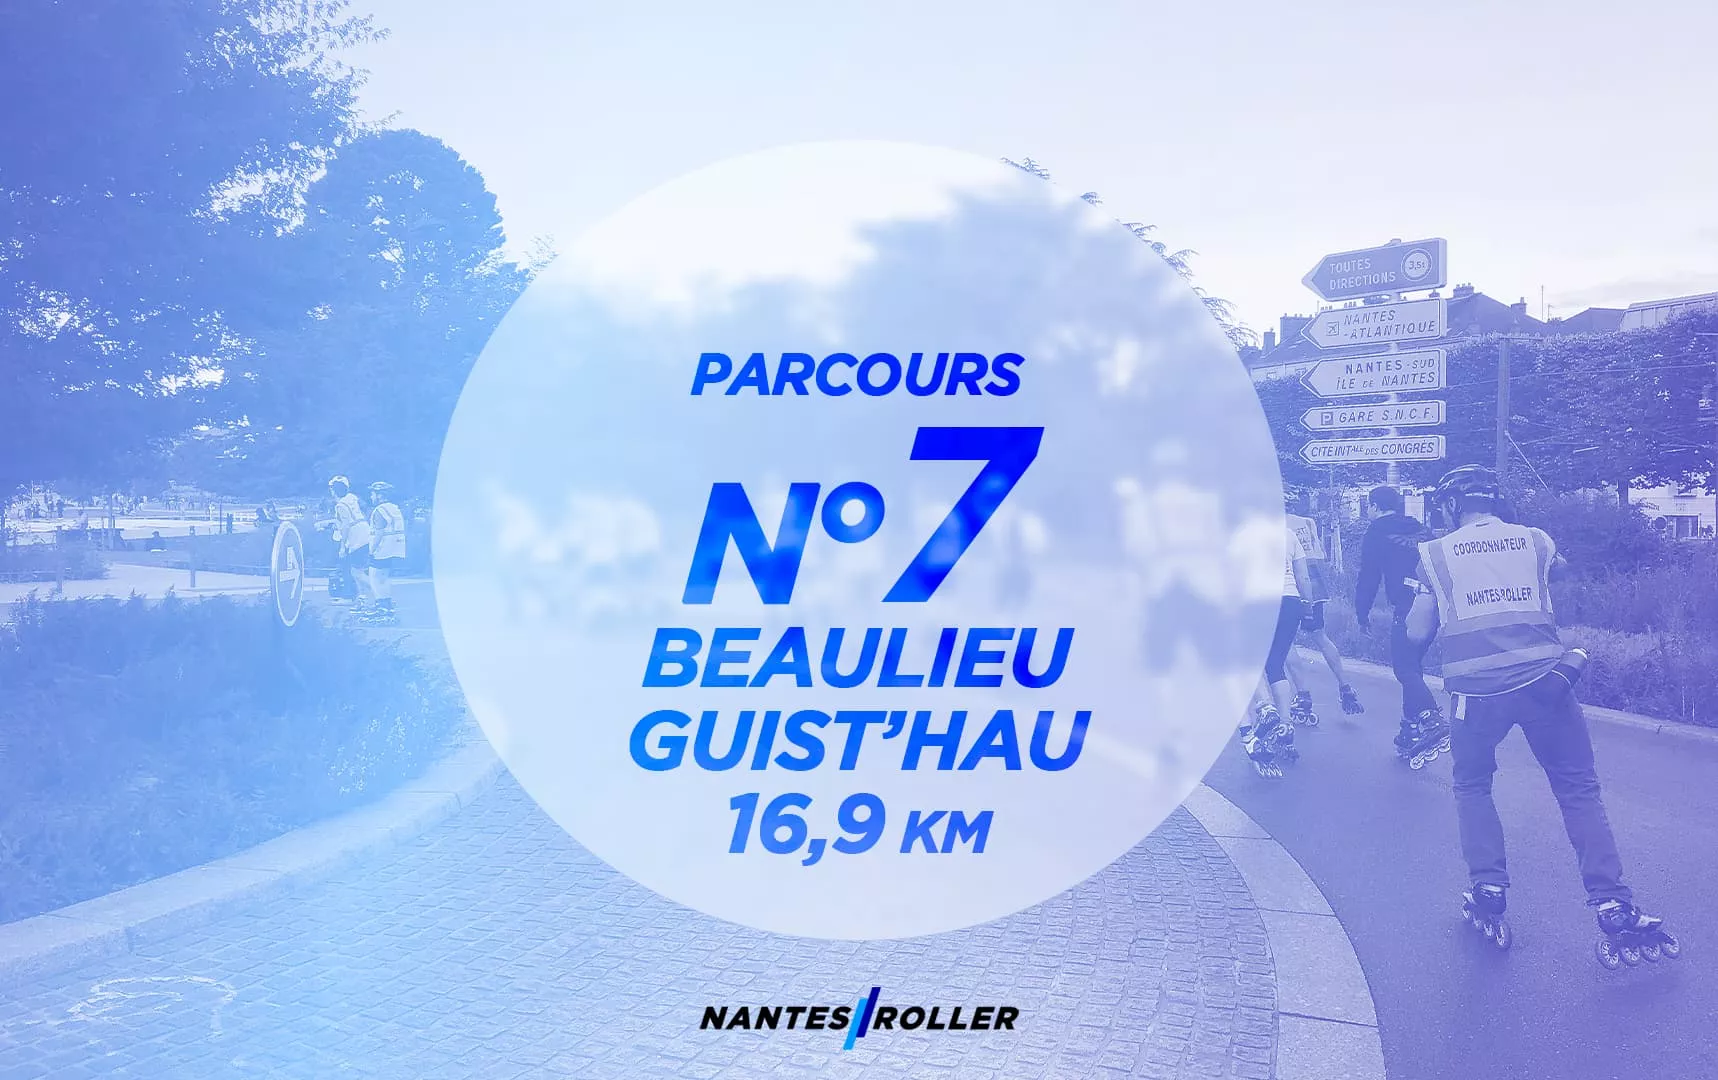 Représentation du parcours NR 07 – Beaulieu – Guist’hau